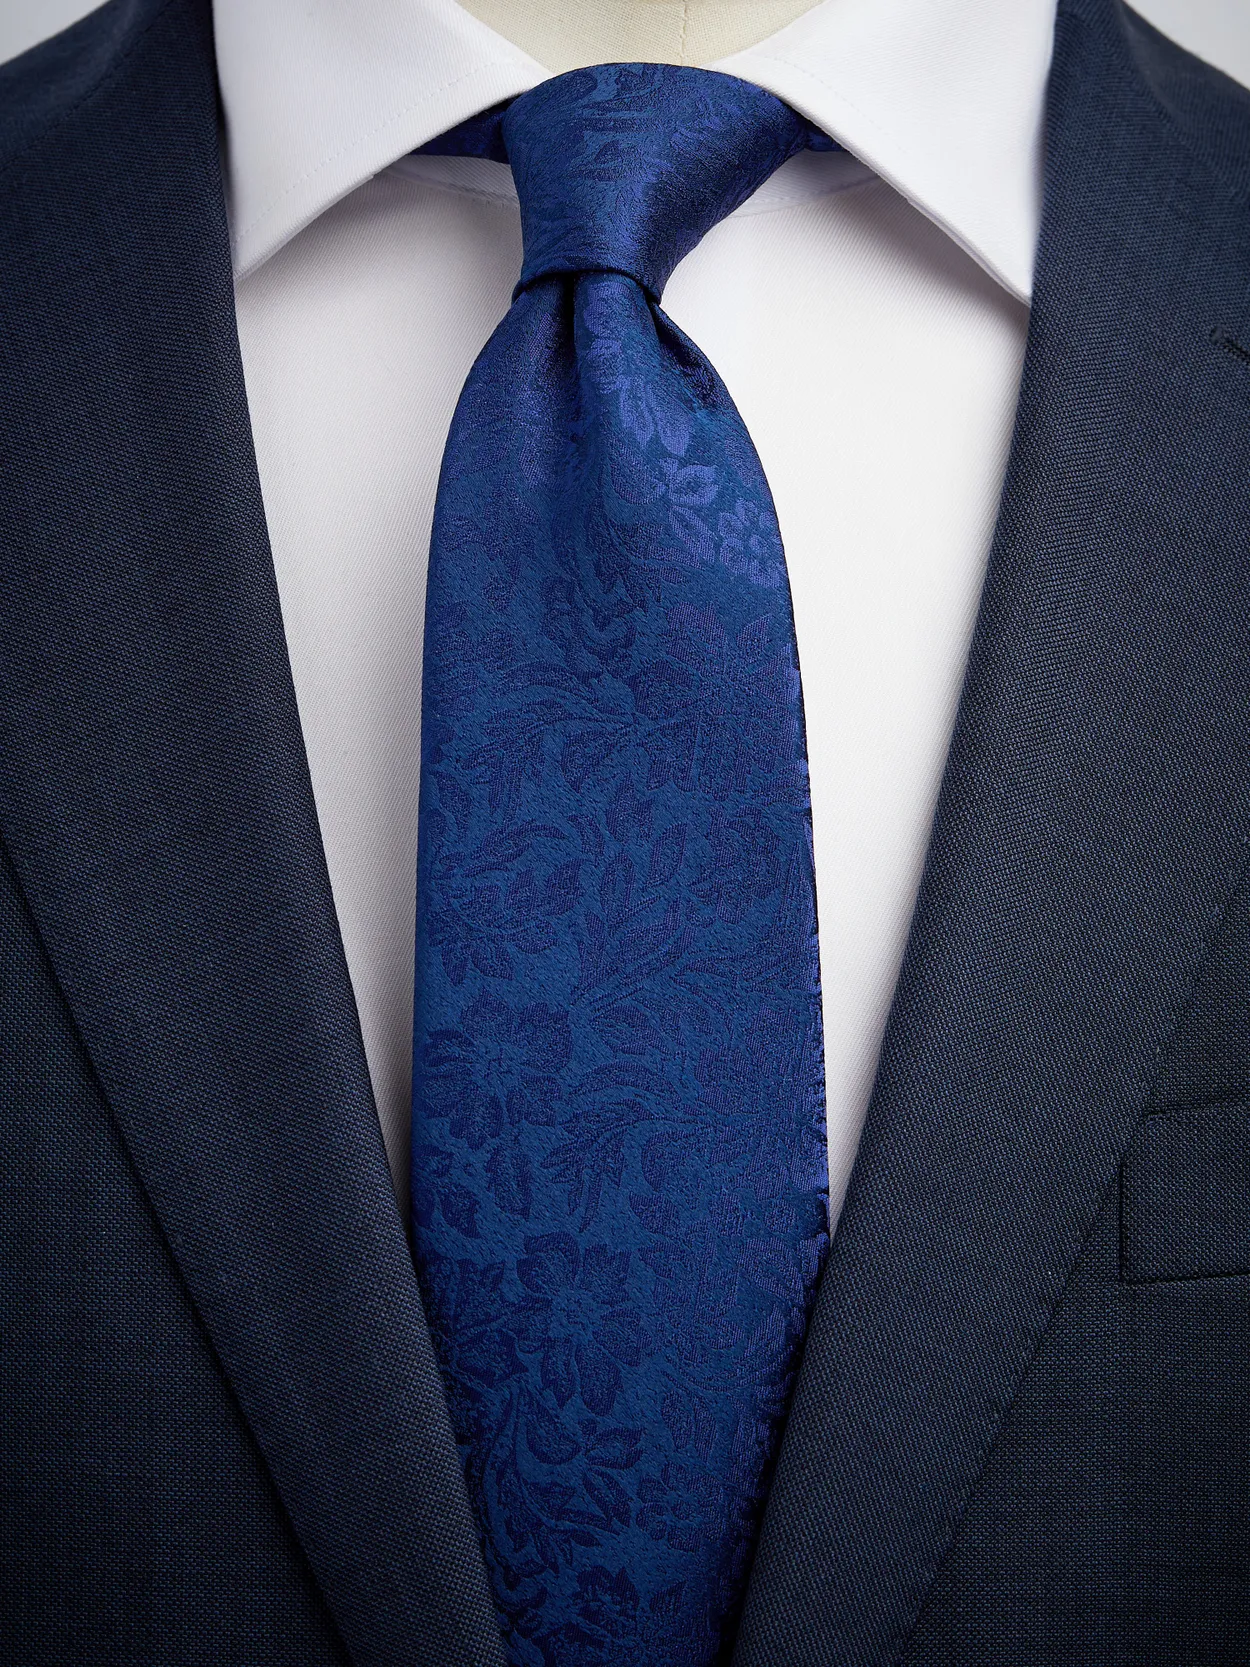 Blue Tie Floral